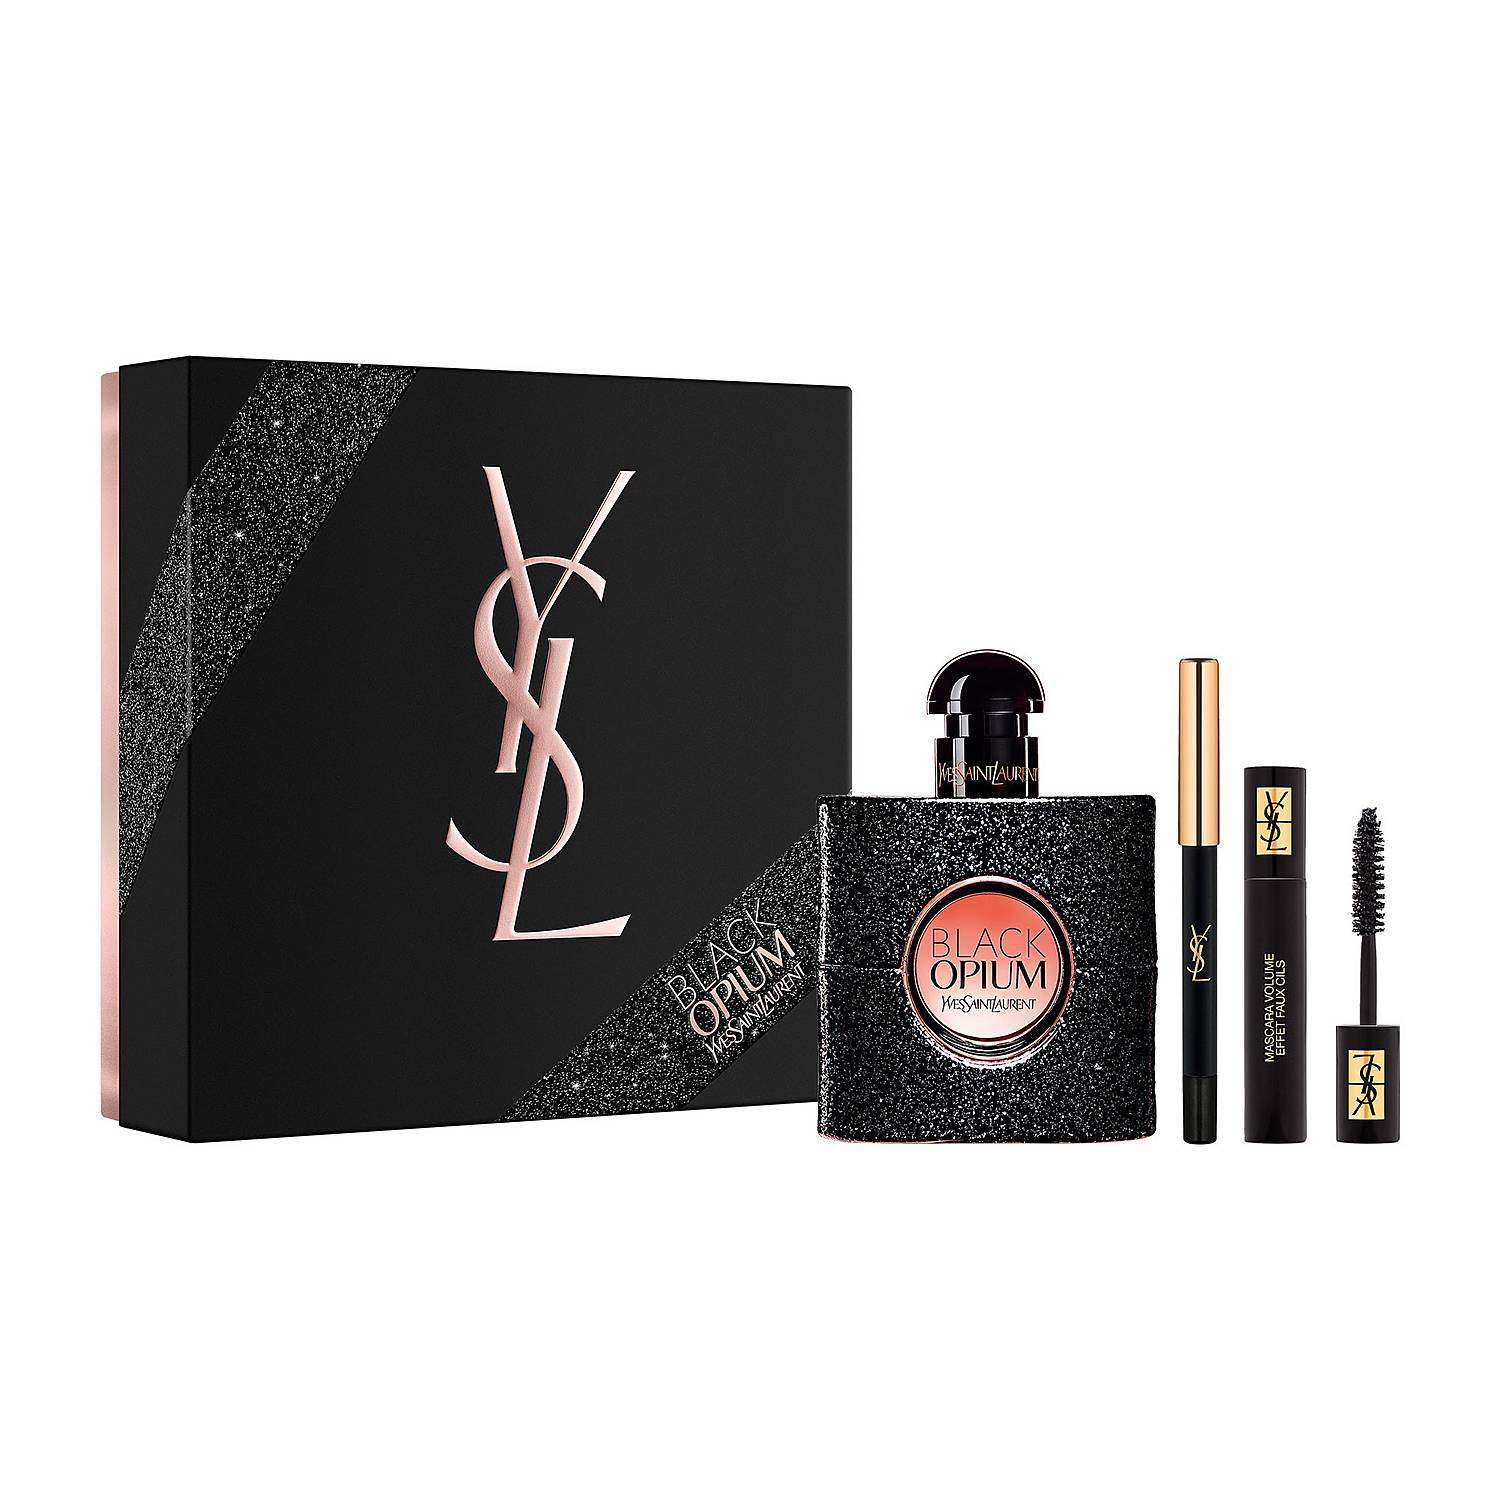 Yves Saint Laurent Black Opium Gift Set | Fehily’s